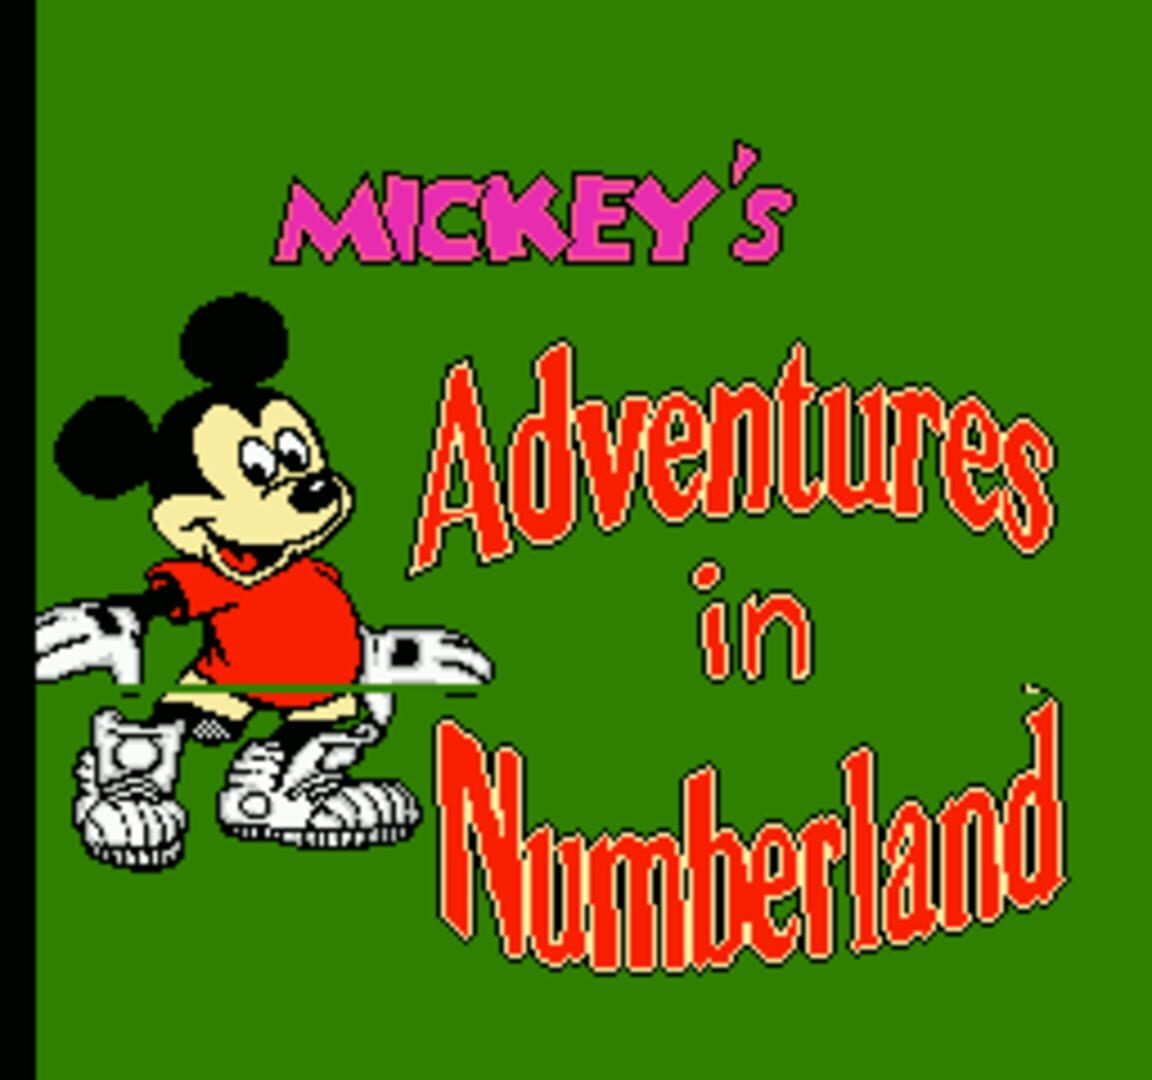 Mickey s adventures. Mickey s Adventures Денди. Mickey's Adventures in Numberland NES. Mickey in Numberland Dendy обложка. Mickey Adventure игра на Денди.